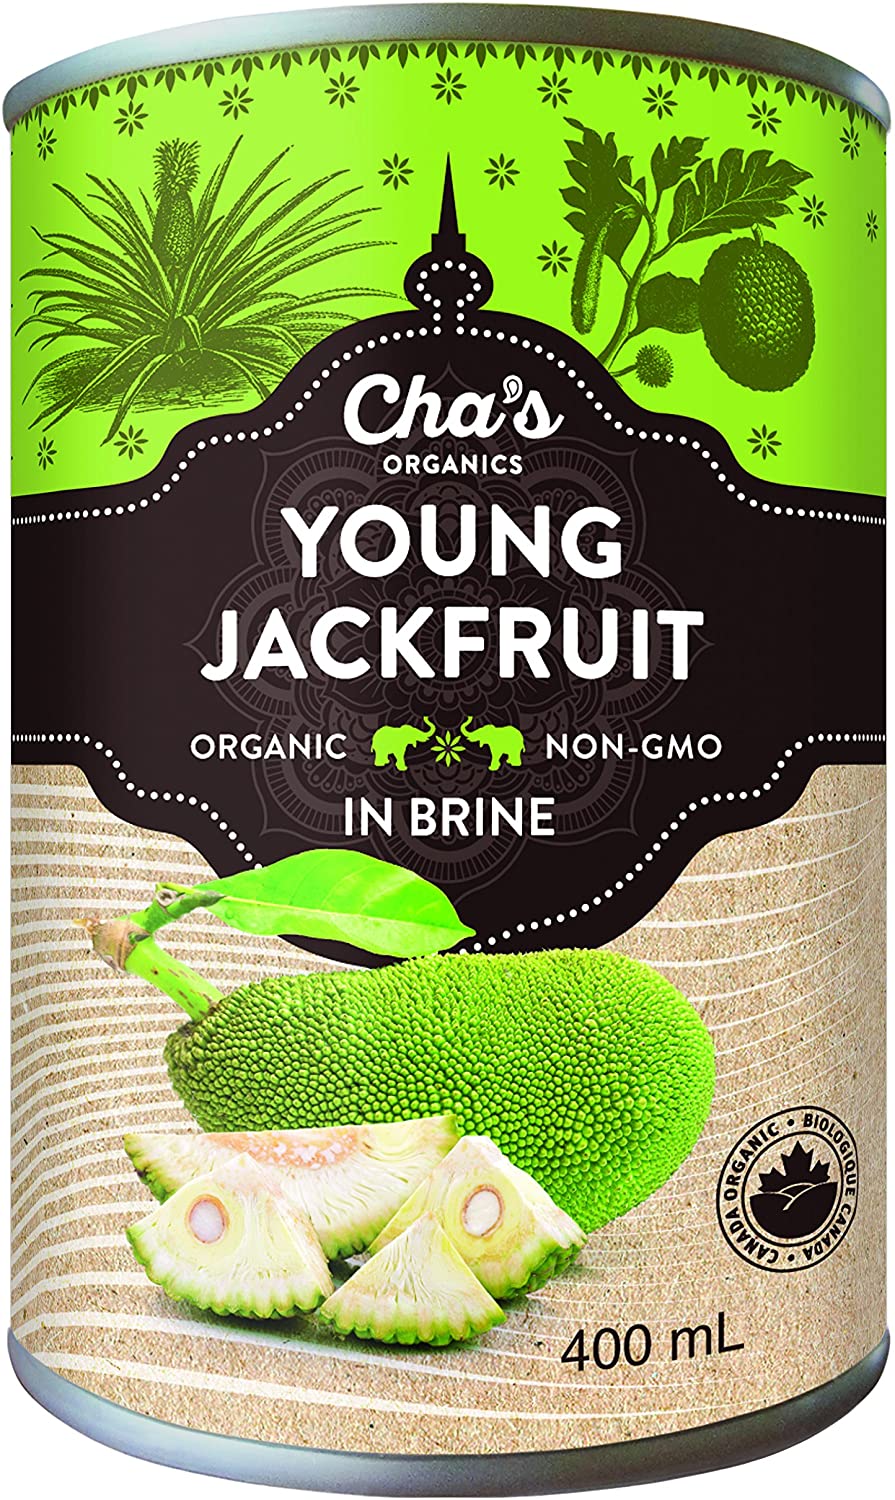 Cha's Young Jackfruit 400ml